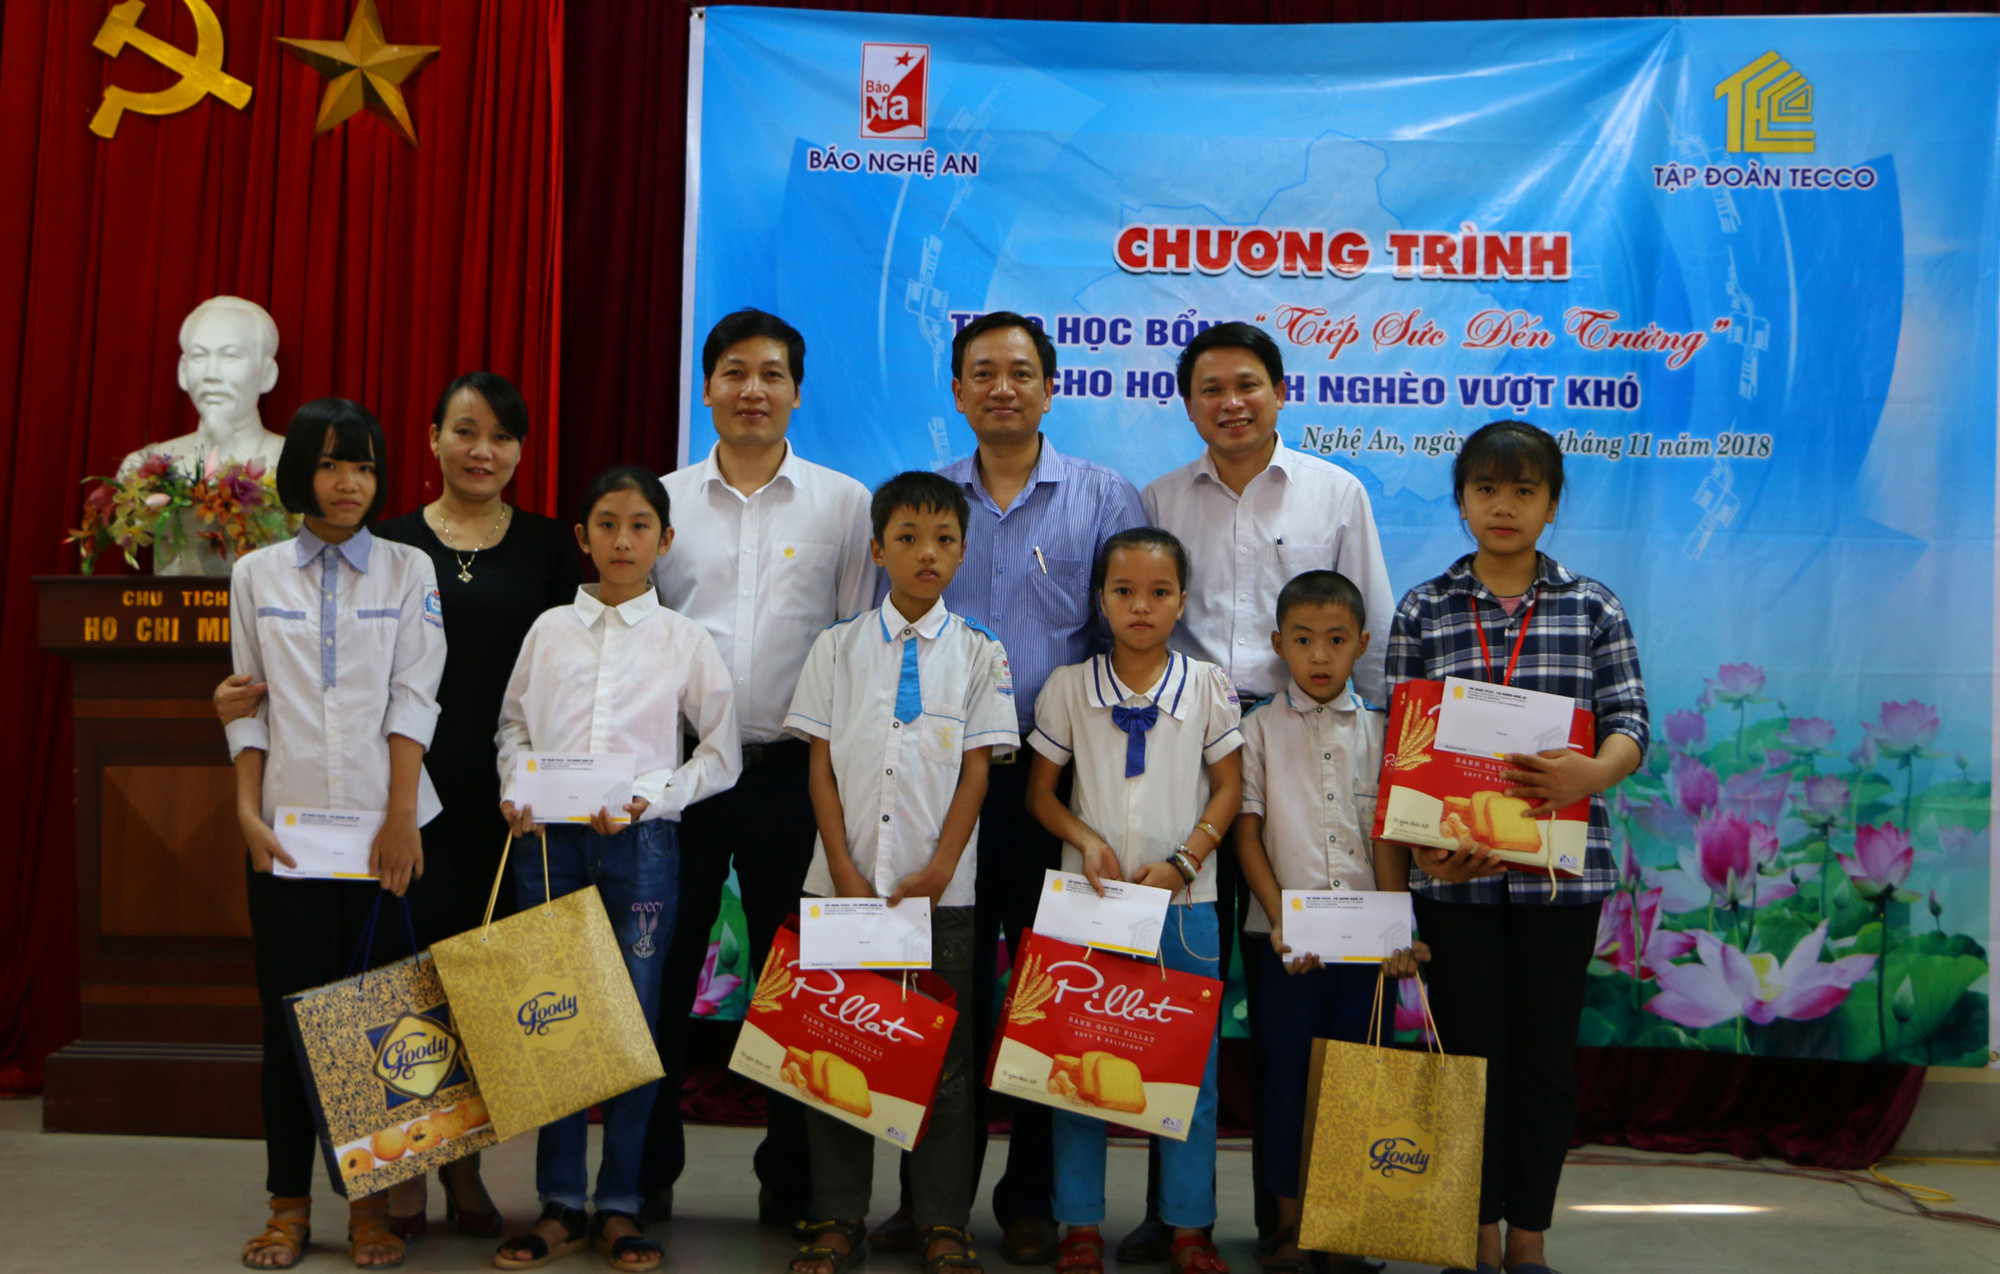 Đại diện Báo Nghệ An và Tập đoàn Tecco trao học bổng cho các học sinh nghèo Nghi Lộc. Ảnh: Nguyễn Hải